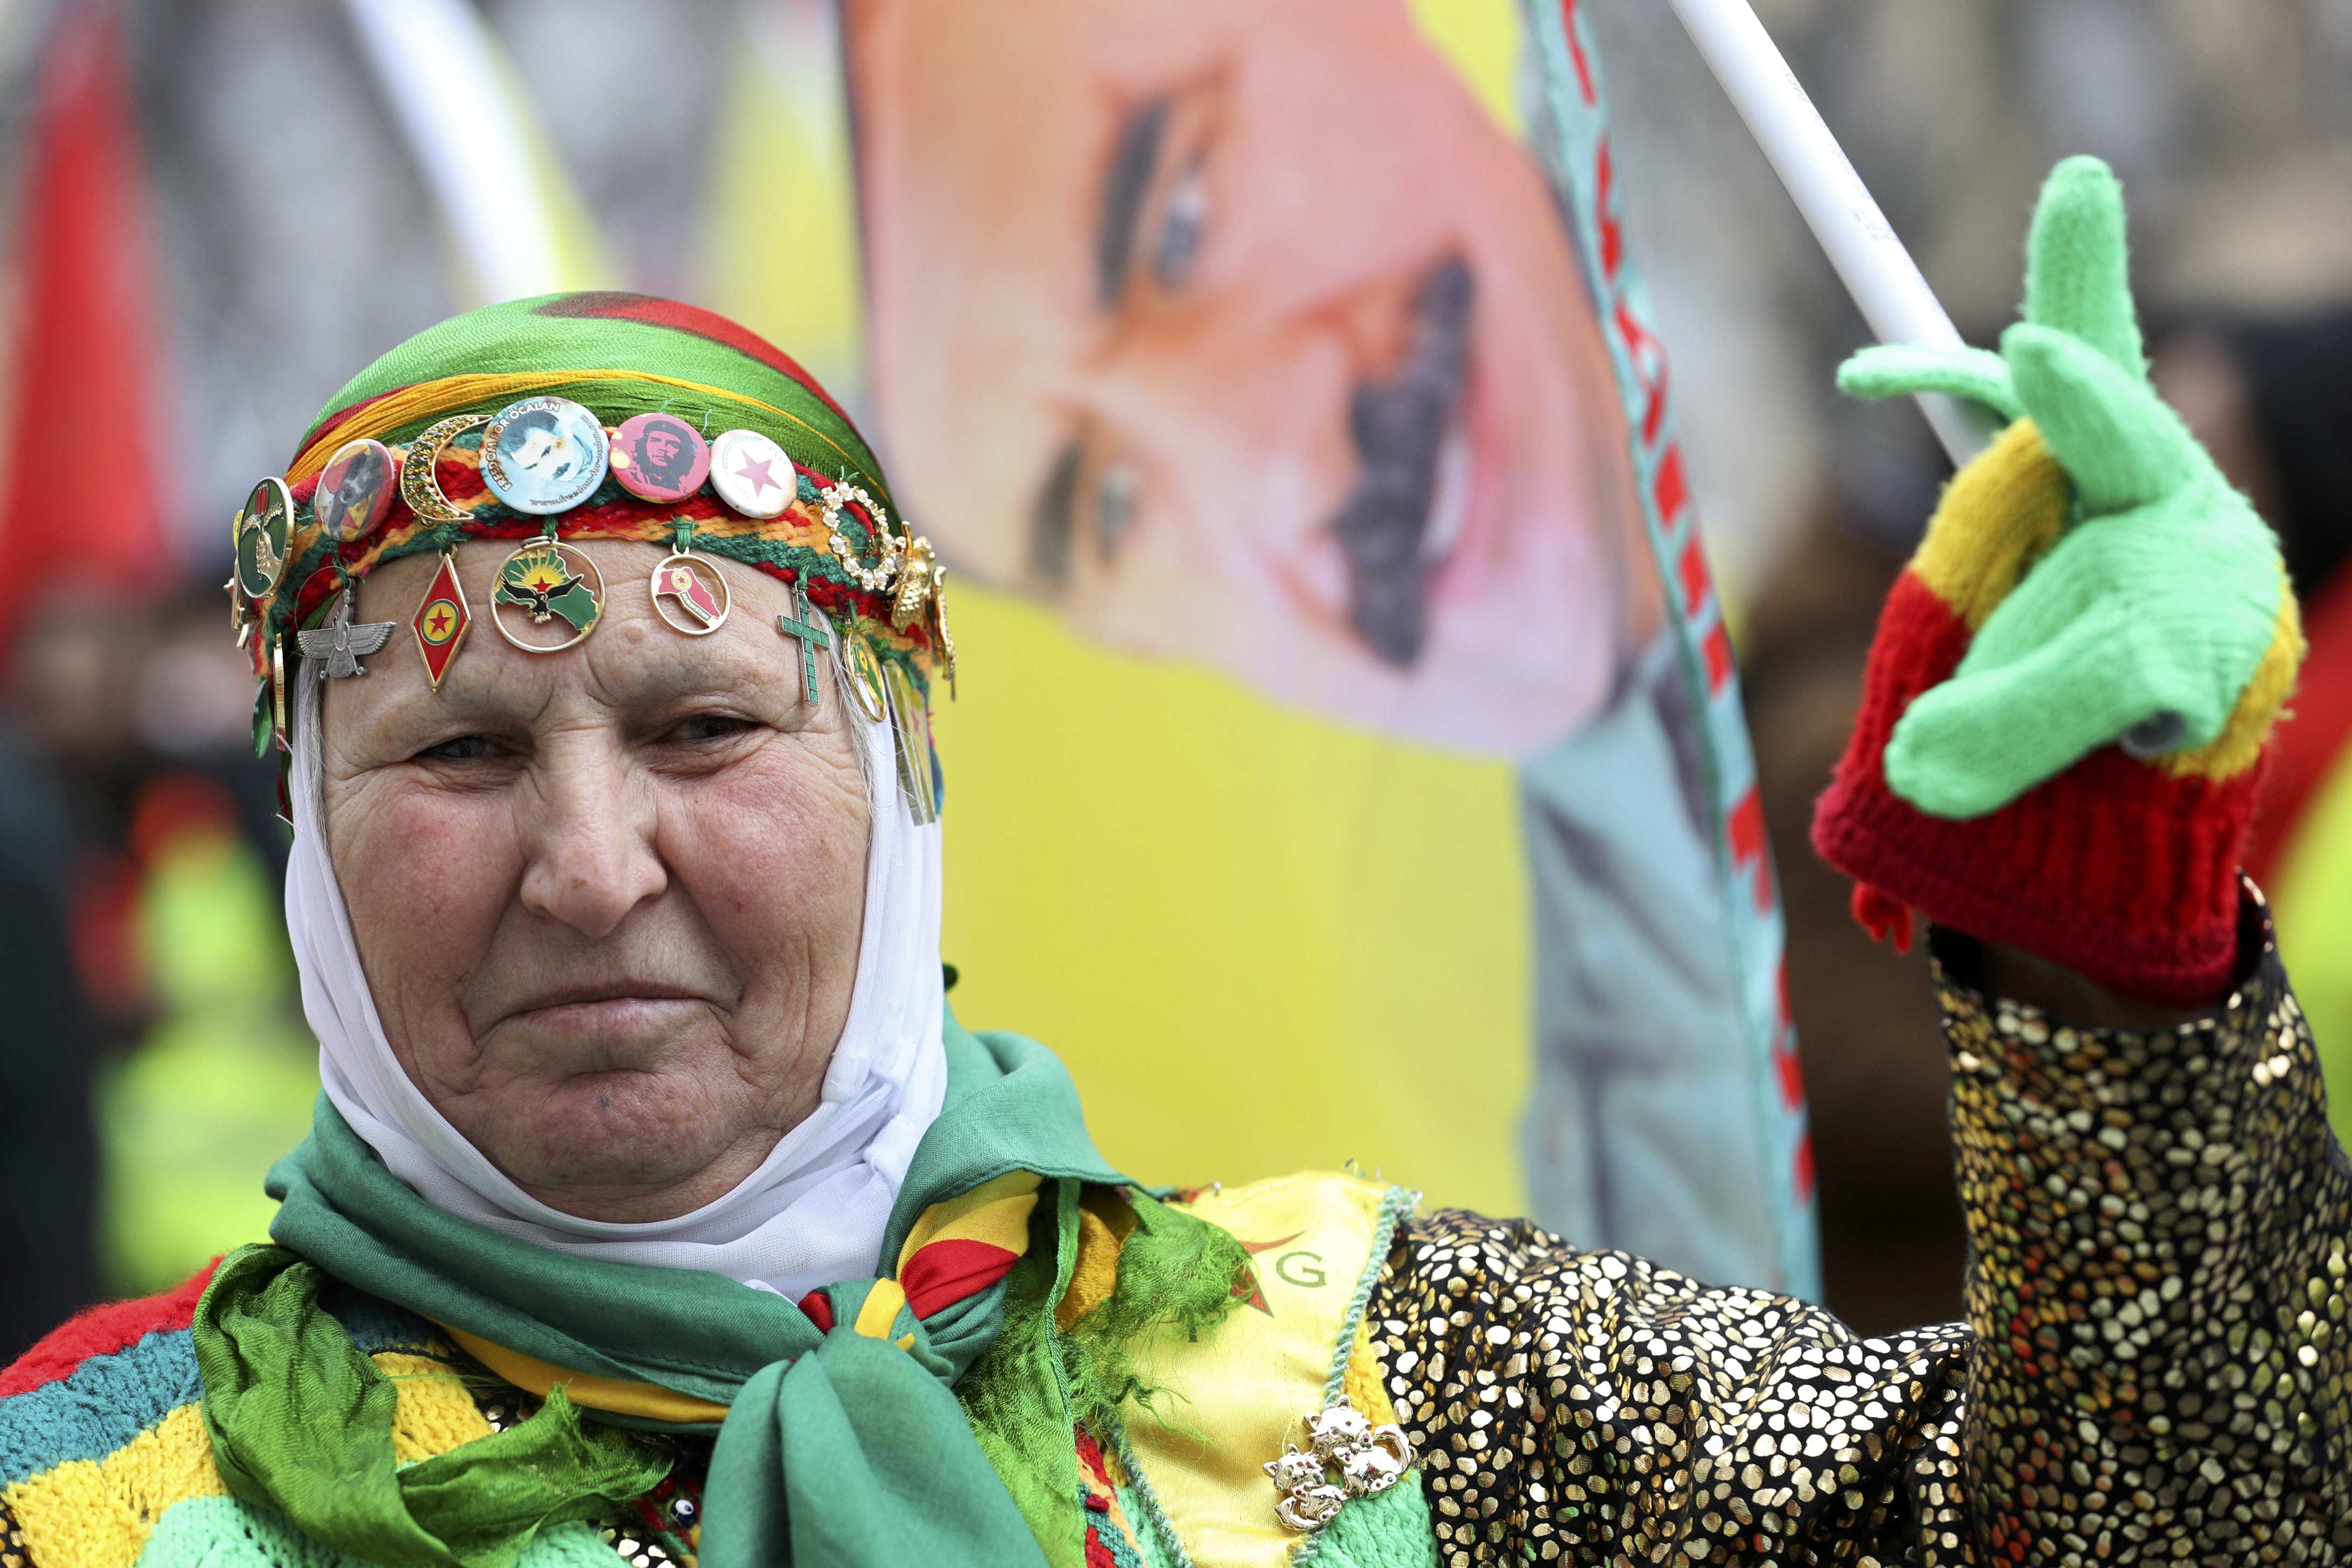 سيدة تشارك فى مظاهرات لدعم زعيم حزب العمال الكردستانى عبد الله اوجلان